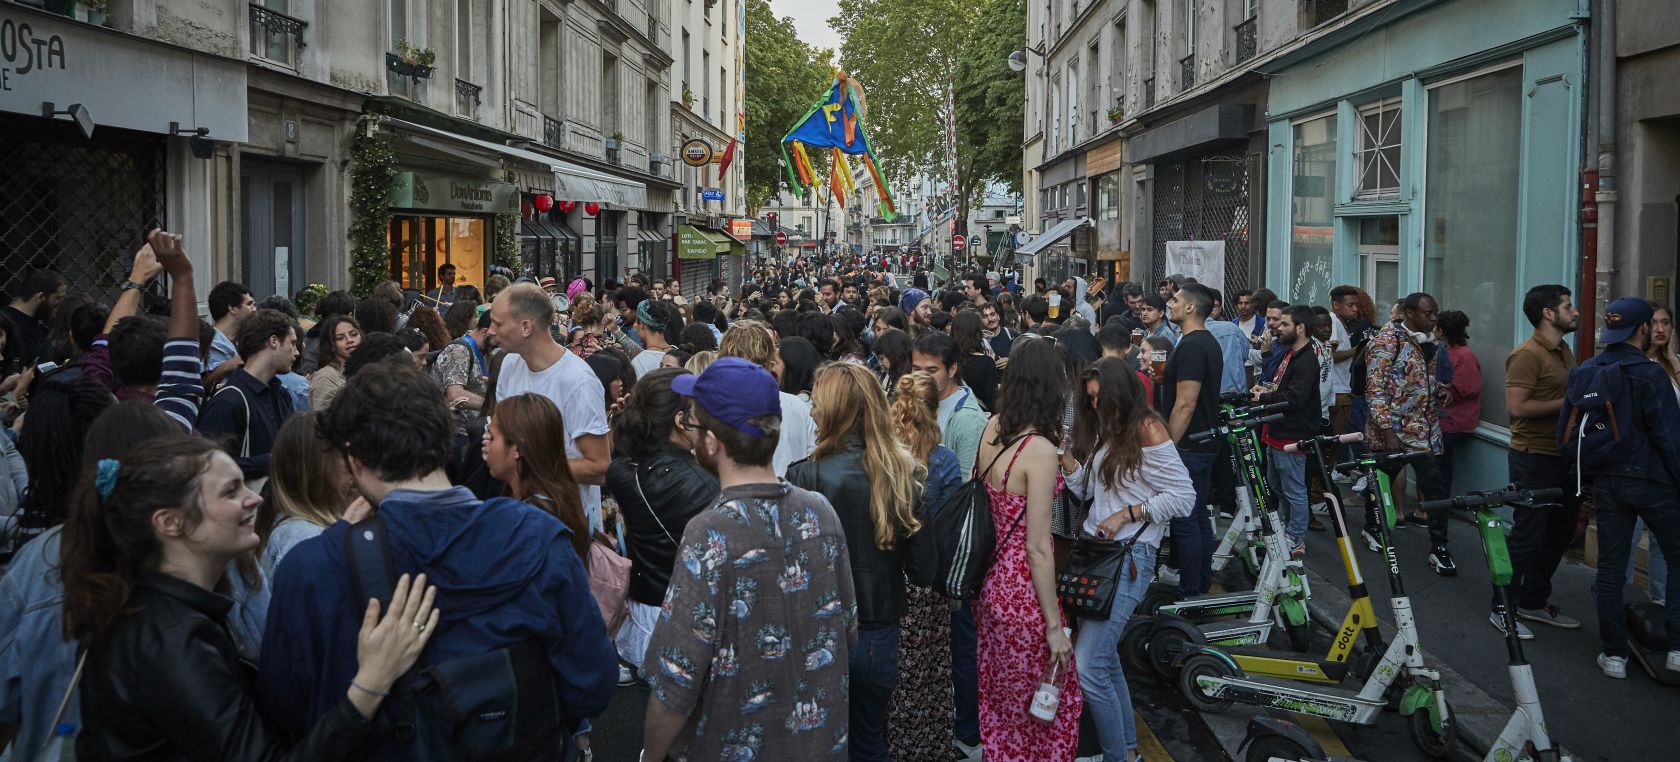 Indignación en París por una Fiesta de la Música multitudinaria y sin mascarillas ni distancia de seguridad